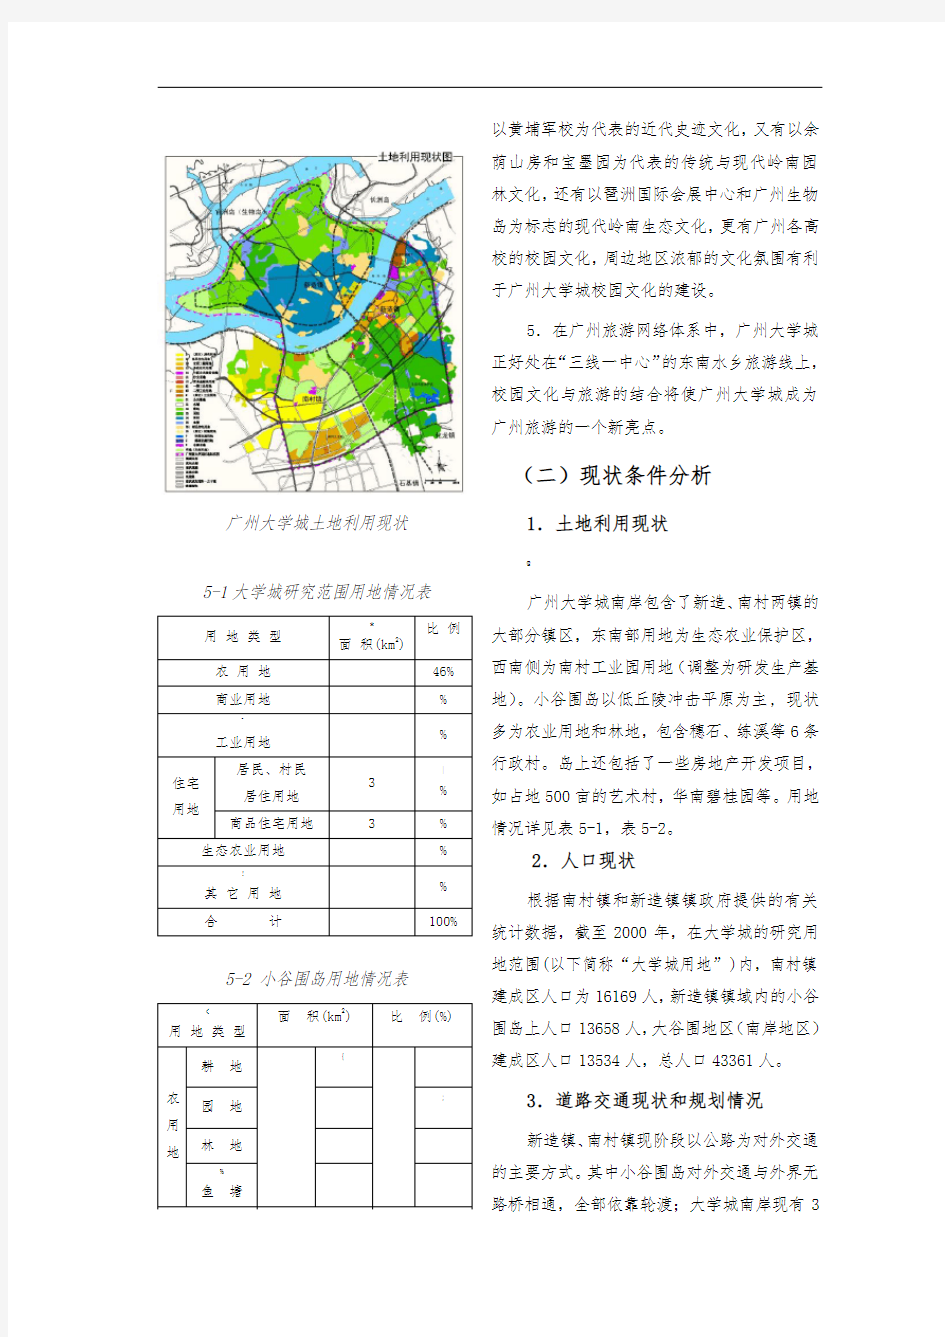 第五章-广州大学城总体规划设计修改稿